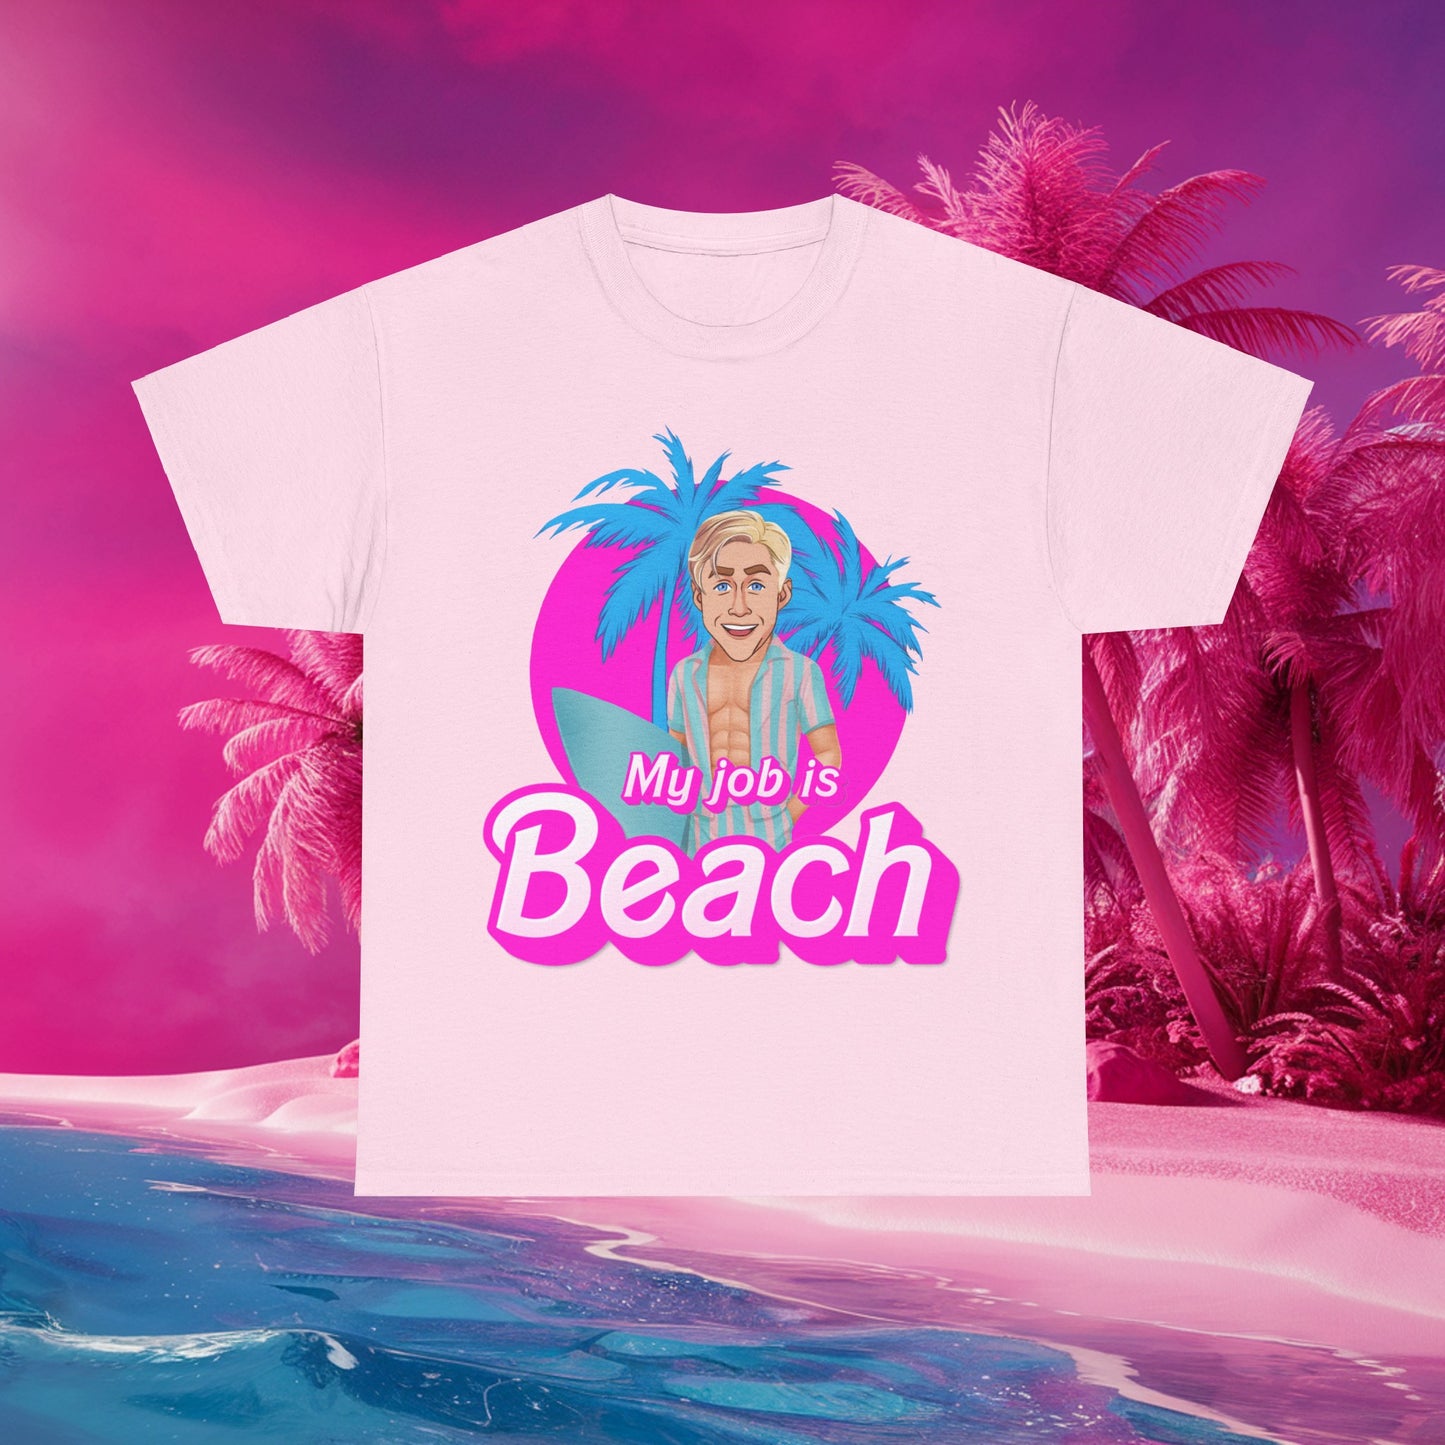 My Job Is Beach Tshirt Ken Shirt Barbie T-shirt Surfing Tee Surf T shirt Summer Shirt Vacation T-Shirt Surfing Gift for Surfer Summer Gift Next Cult Brand